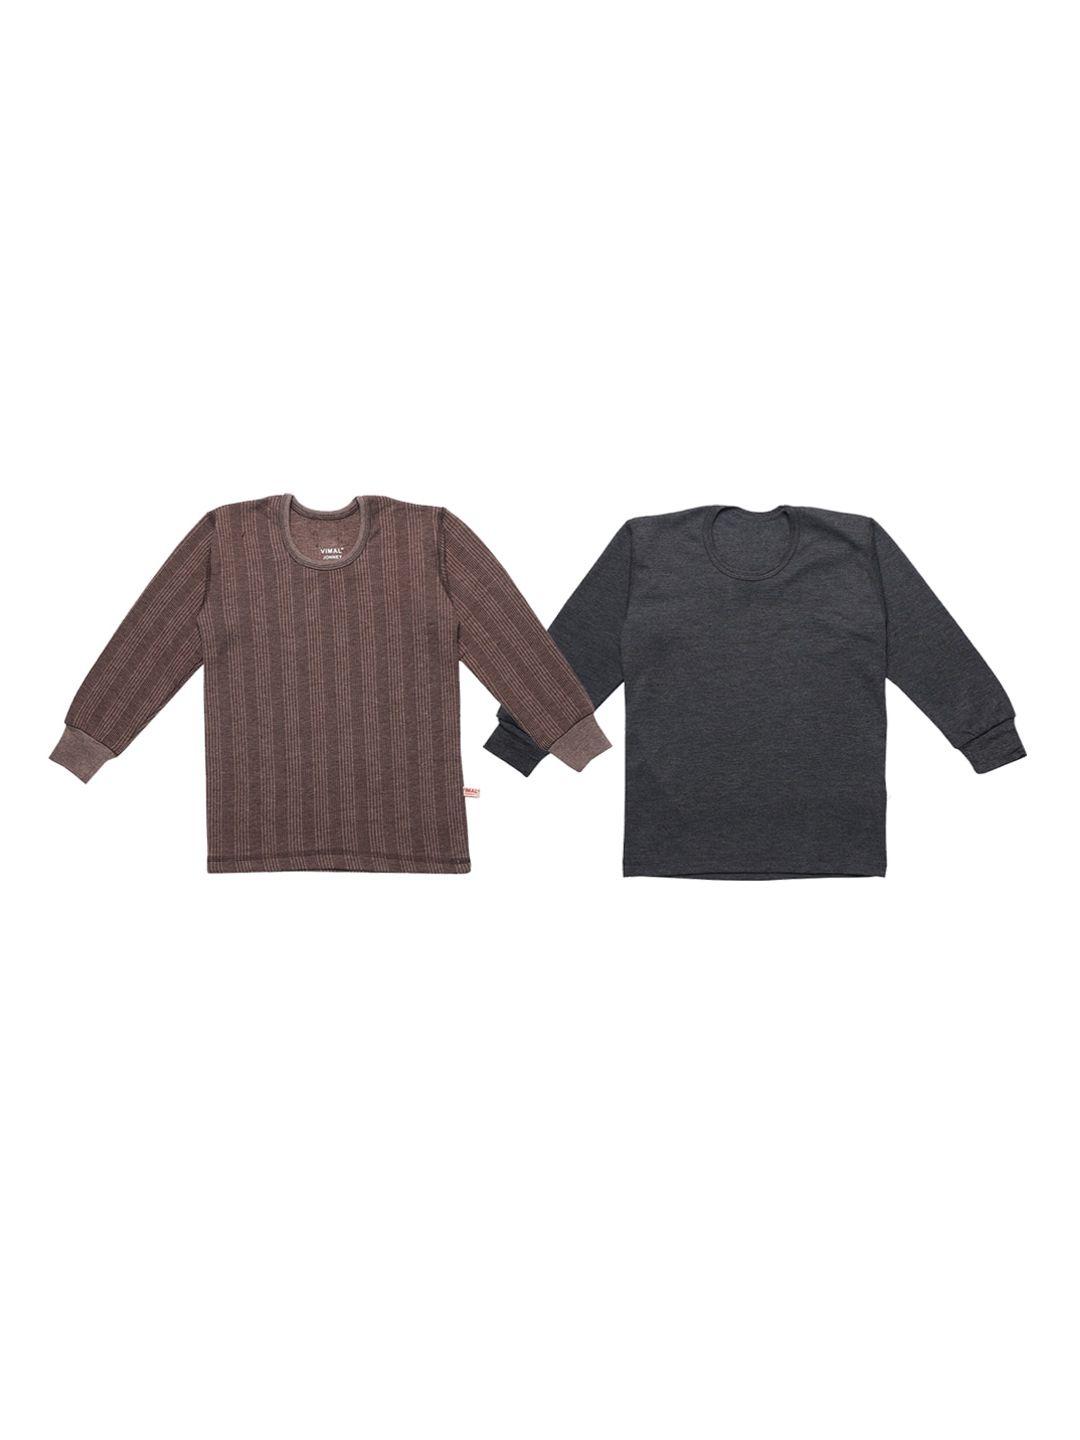 vimal jonney kids pack of 2 brown & black knitted thermal tops